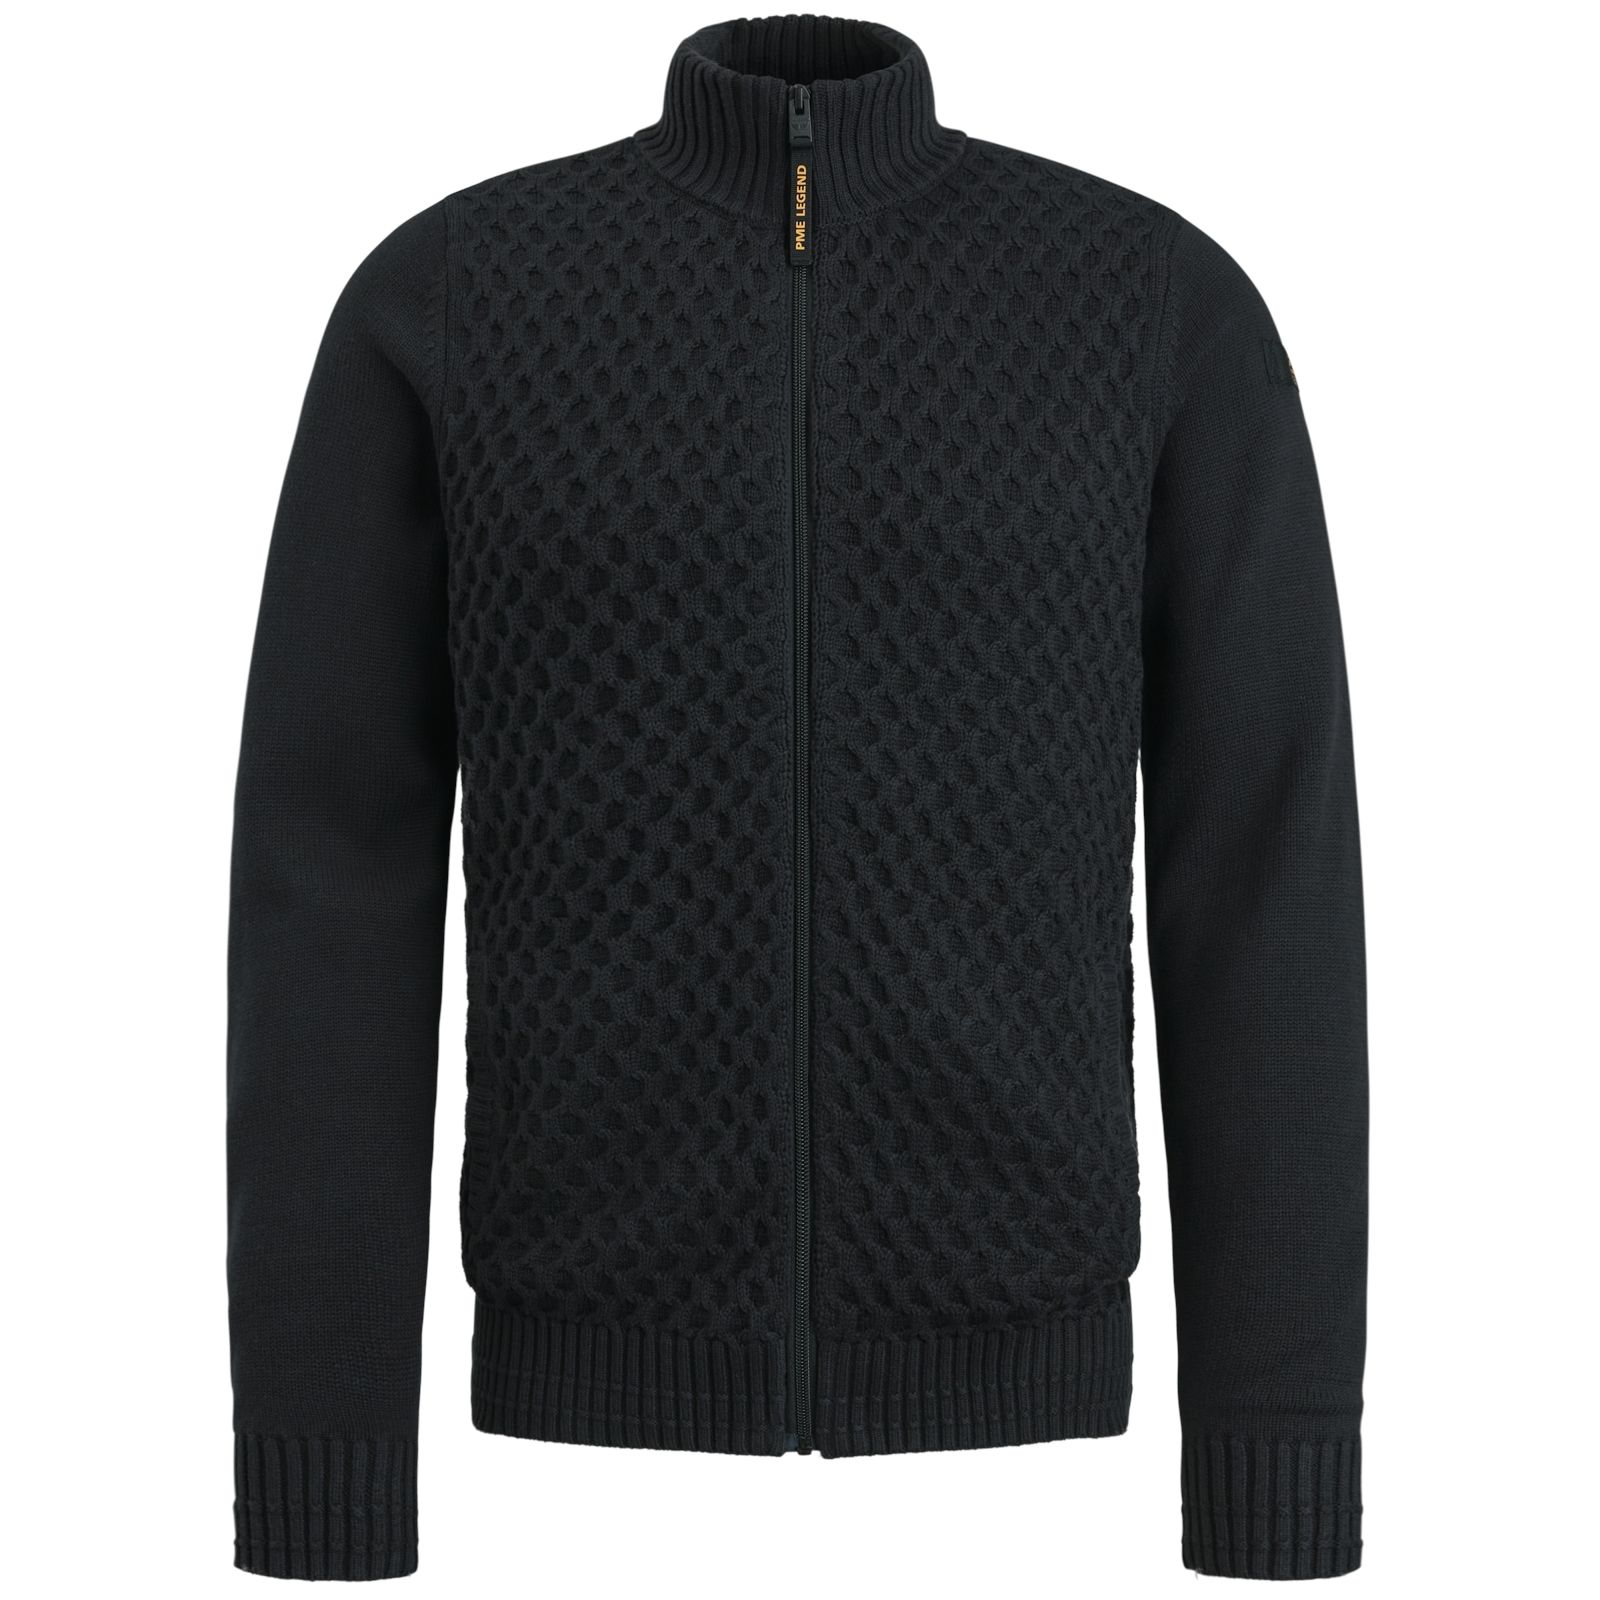 Pme Legend Zip jacket cotton structure mix Black Onyx 00105917-9139